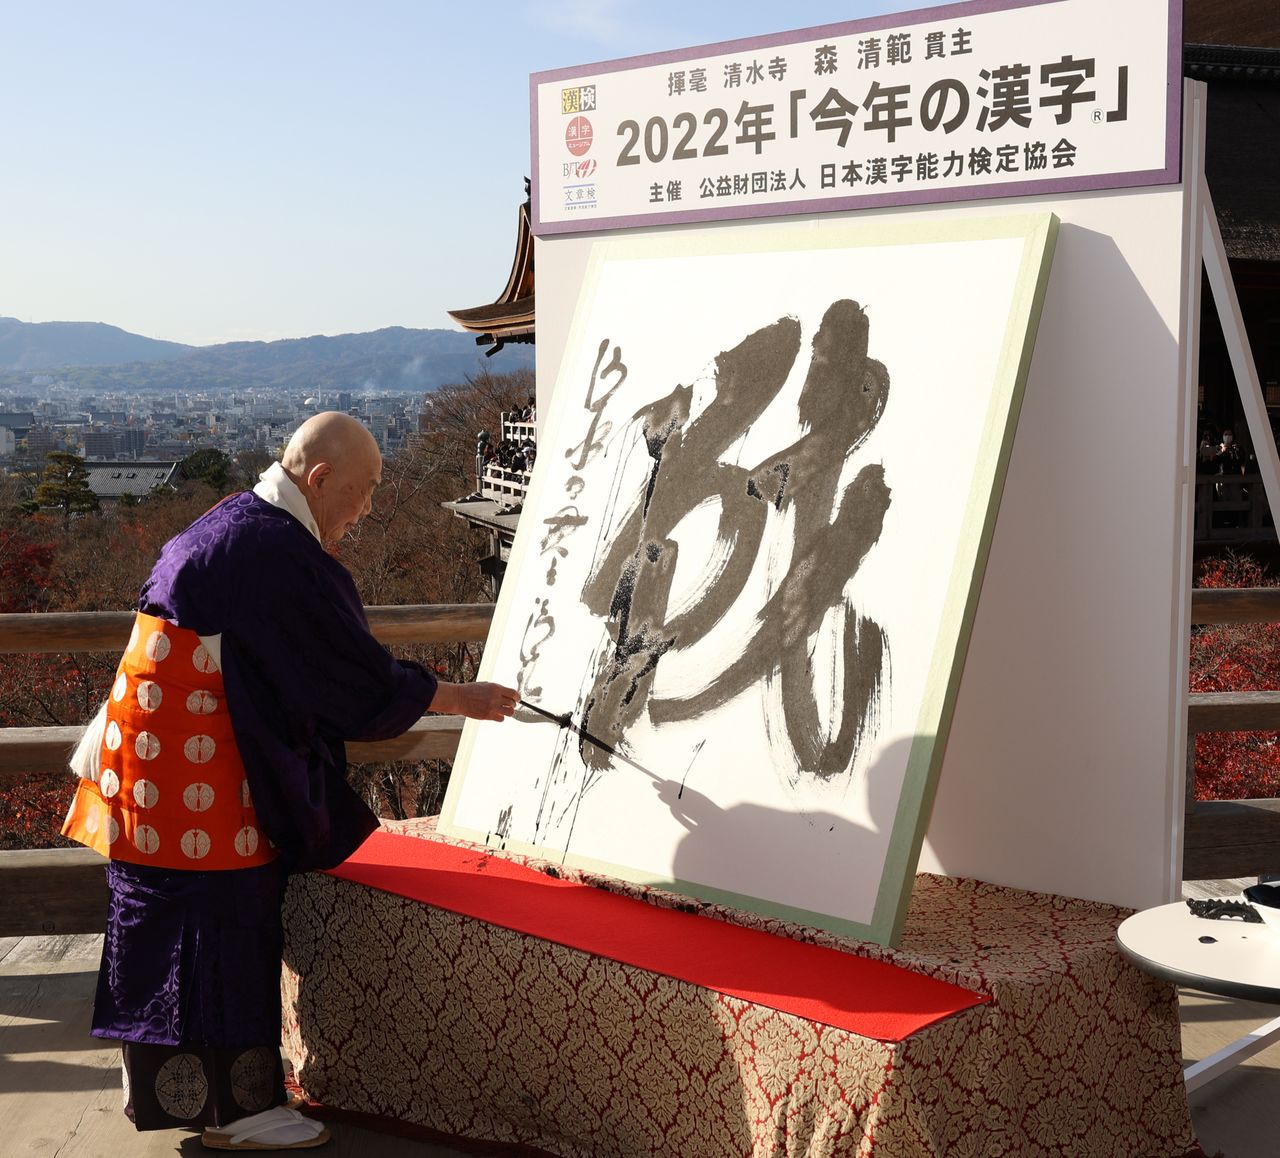 موري سيهان، الكاهن الأكبر في معبد كيوميزوديرا، يكتب كانجي العام لسنة 2022 في الثاني عشر من ديسمبر/ كانون الأول في المعبد بمدينة كيوتو. (جيجي برس.)